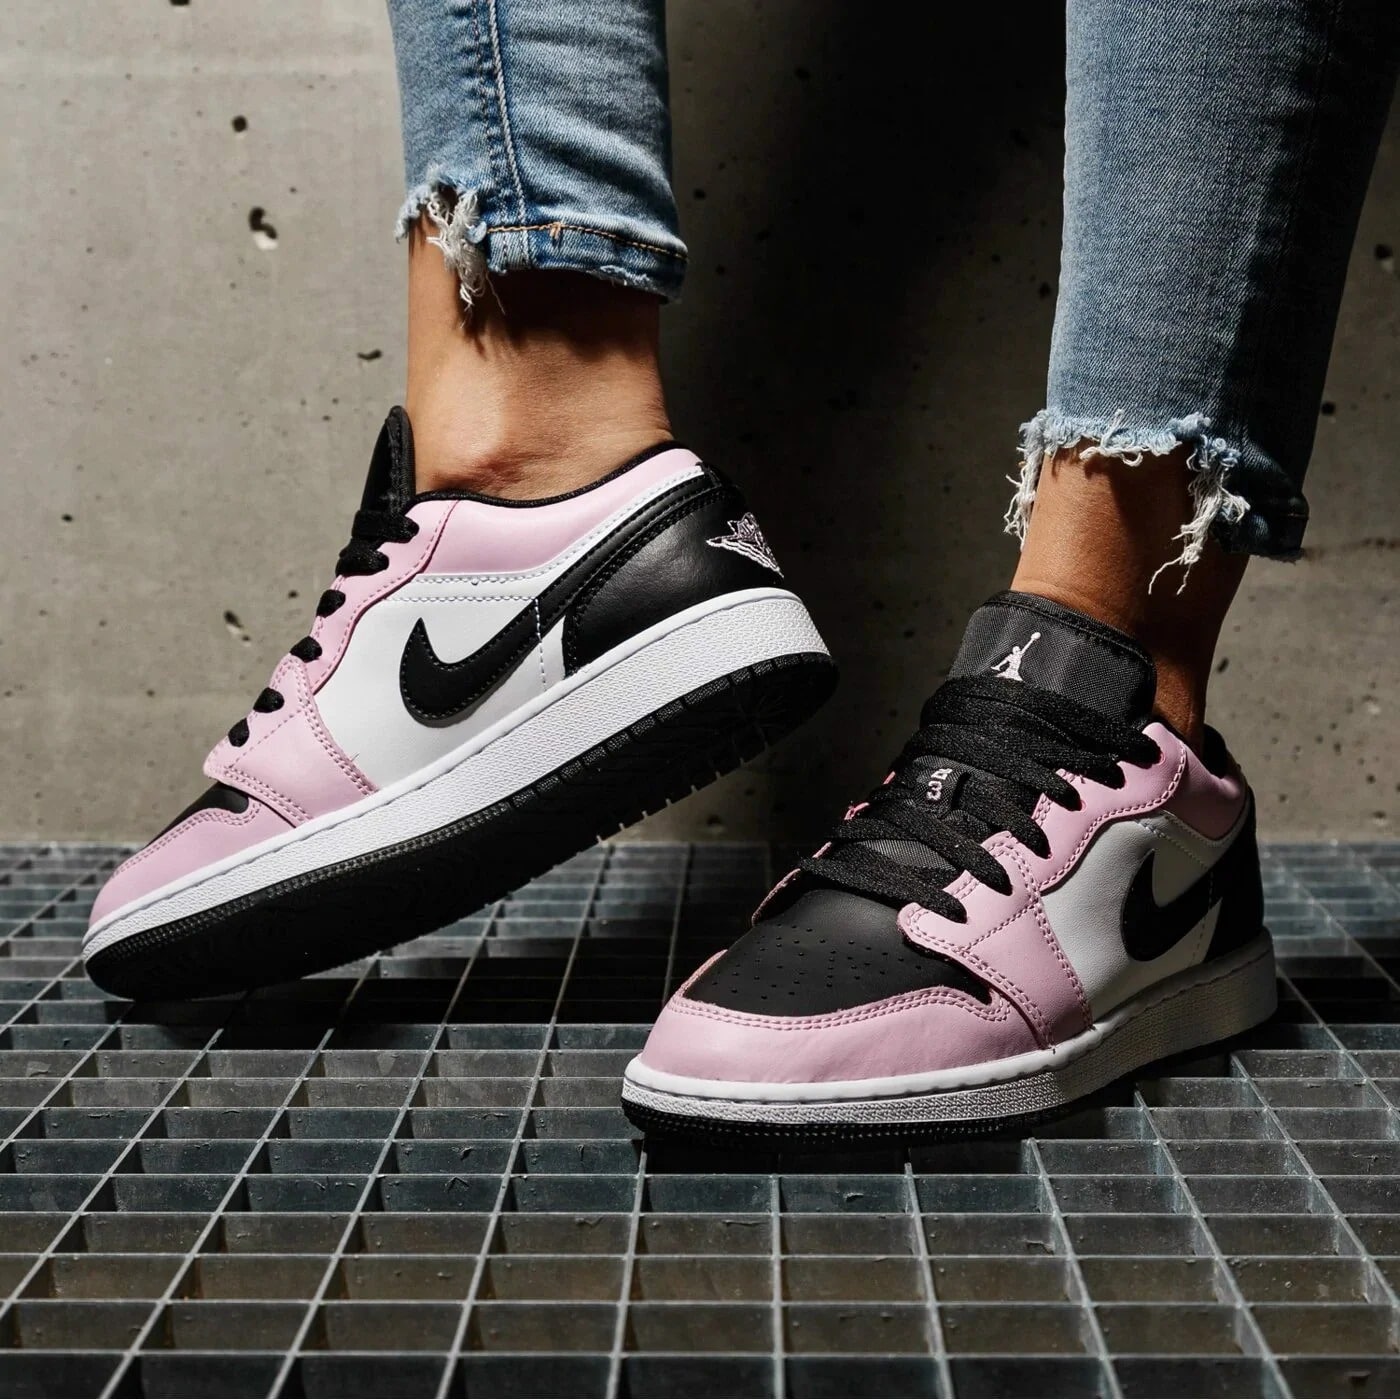 giày nữ air jordan 1 low “light arctic pink” 554723-601